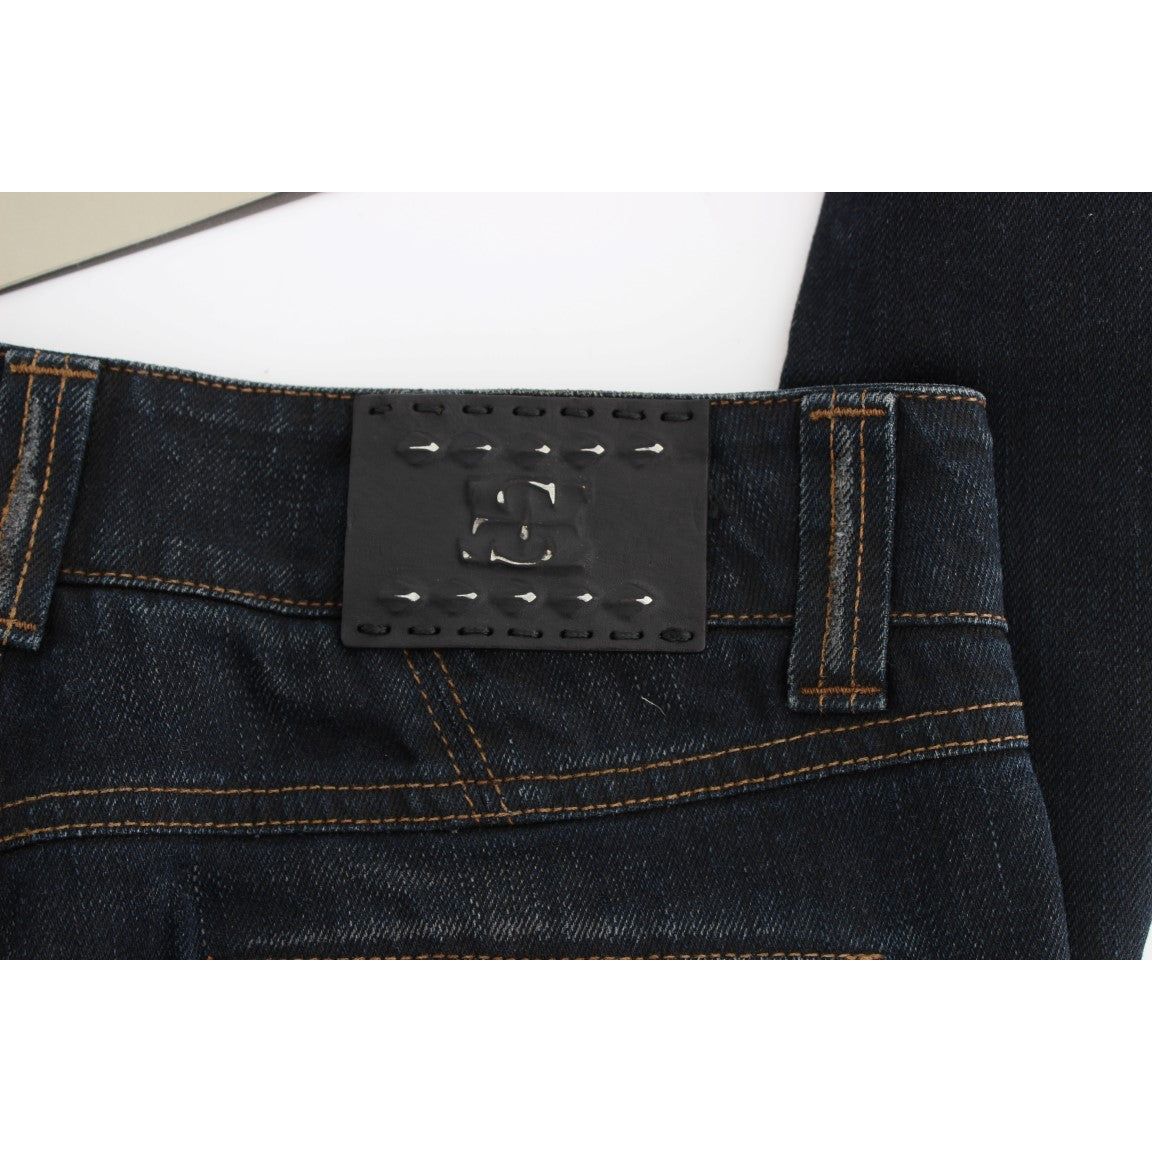 Ermanno Scervino Chic Slim Fit Italian Cotton Jeans blue-wash-cotton-slim-fit-jeans 318990-blue-wash-cotton-slim-fit-jeans-7.jpg